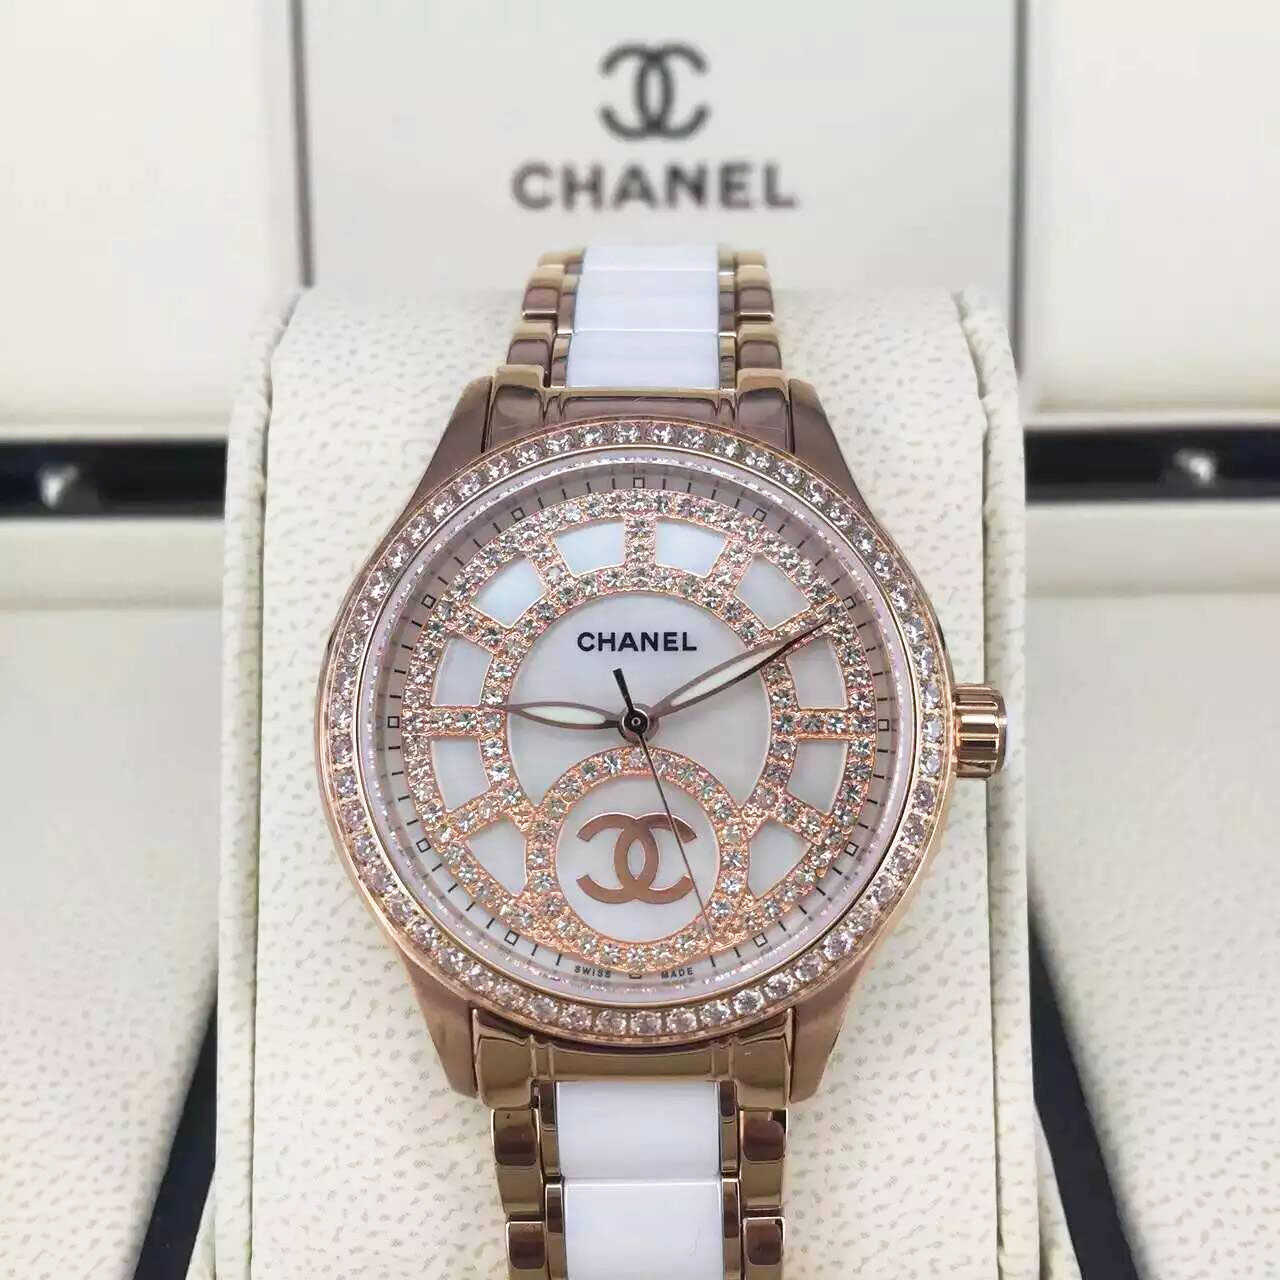 3A香奈兒 Chanel 滿天星系列女士腕錶 搭載進口全自動機械機芯 珍珠母貝環繞120顆璀璨鉆石